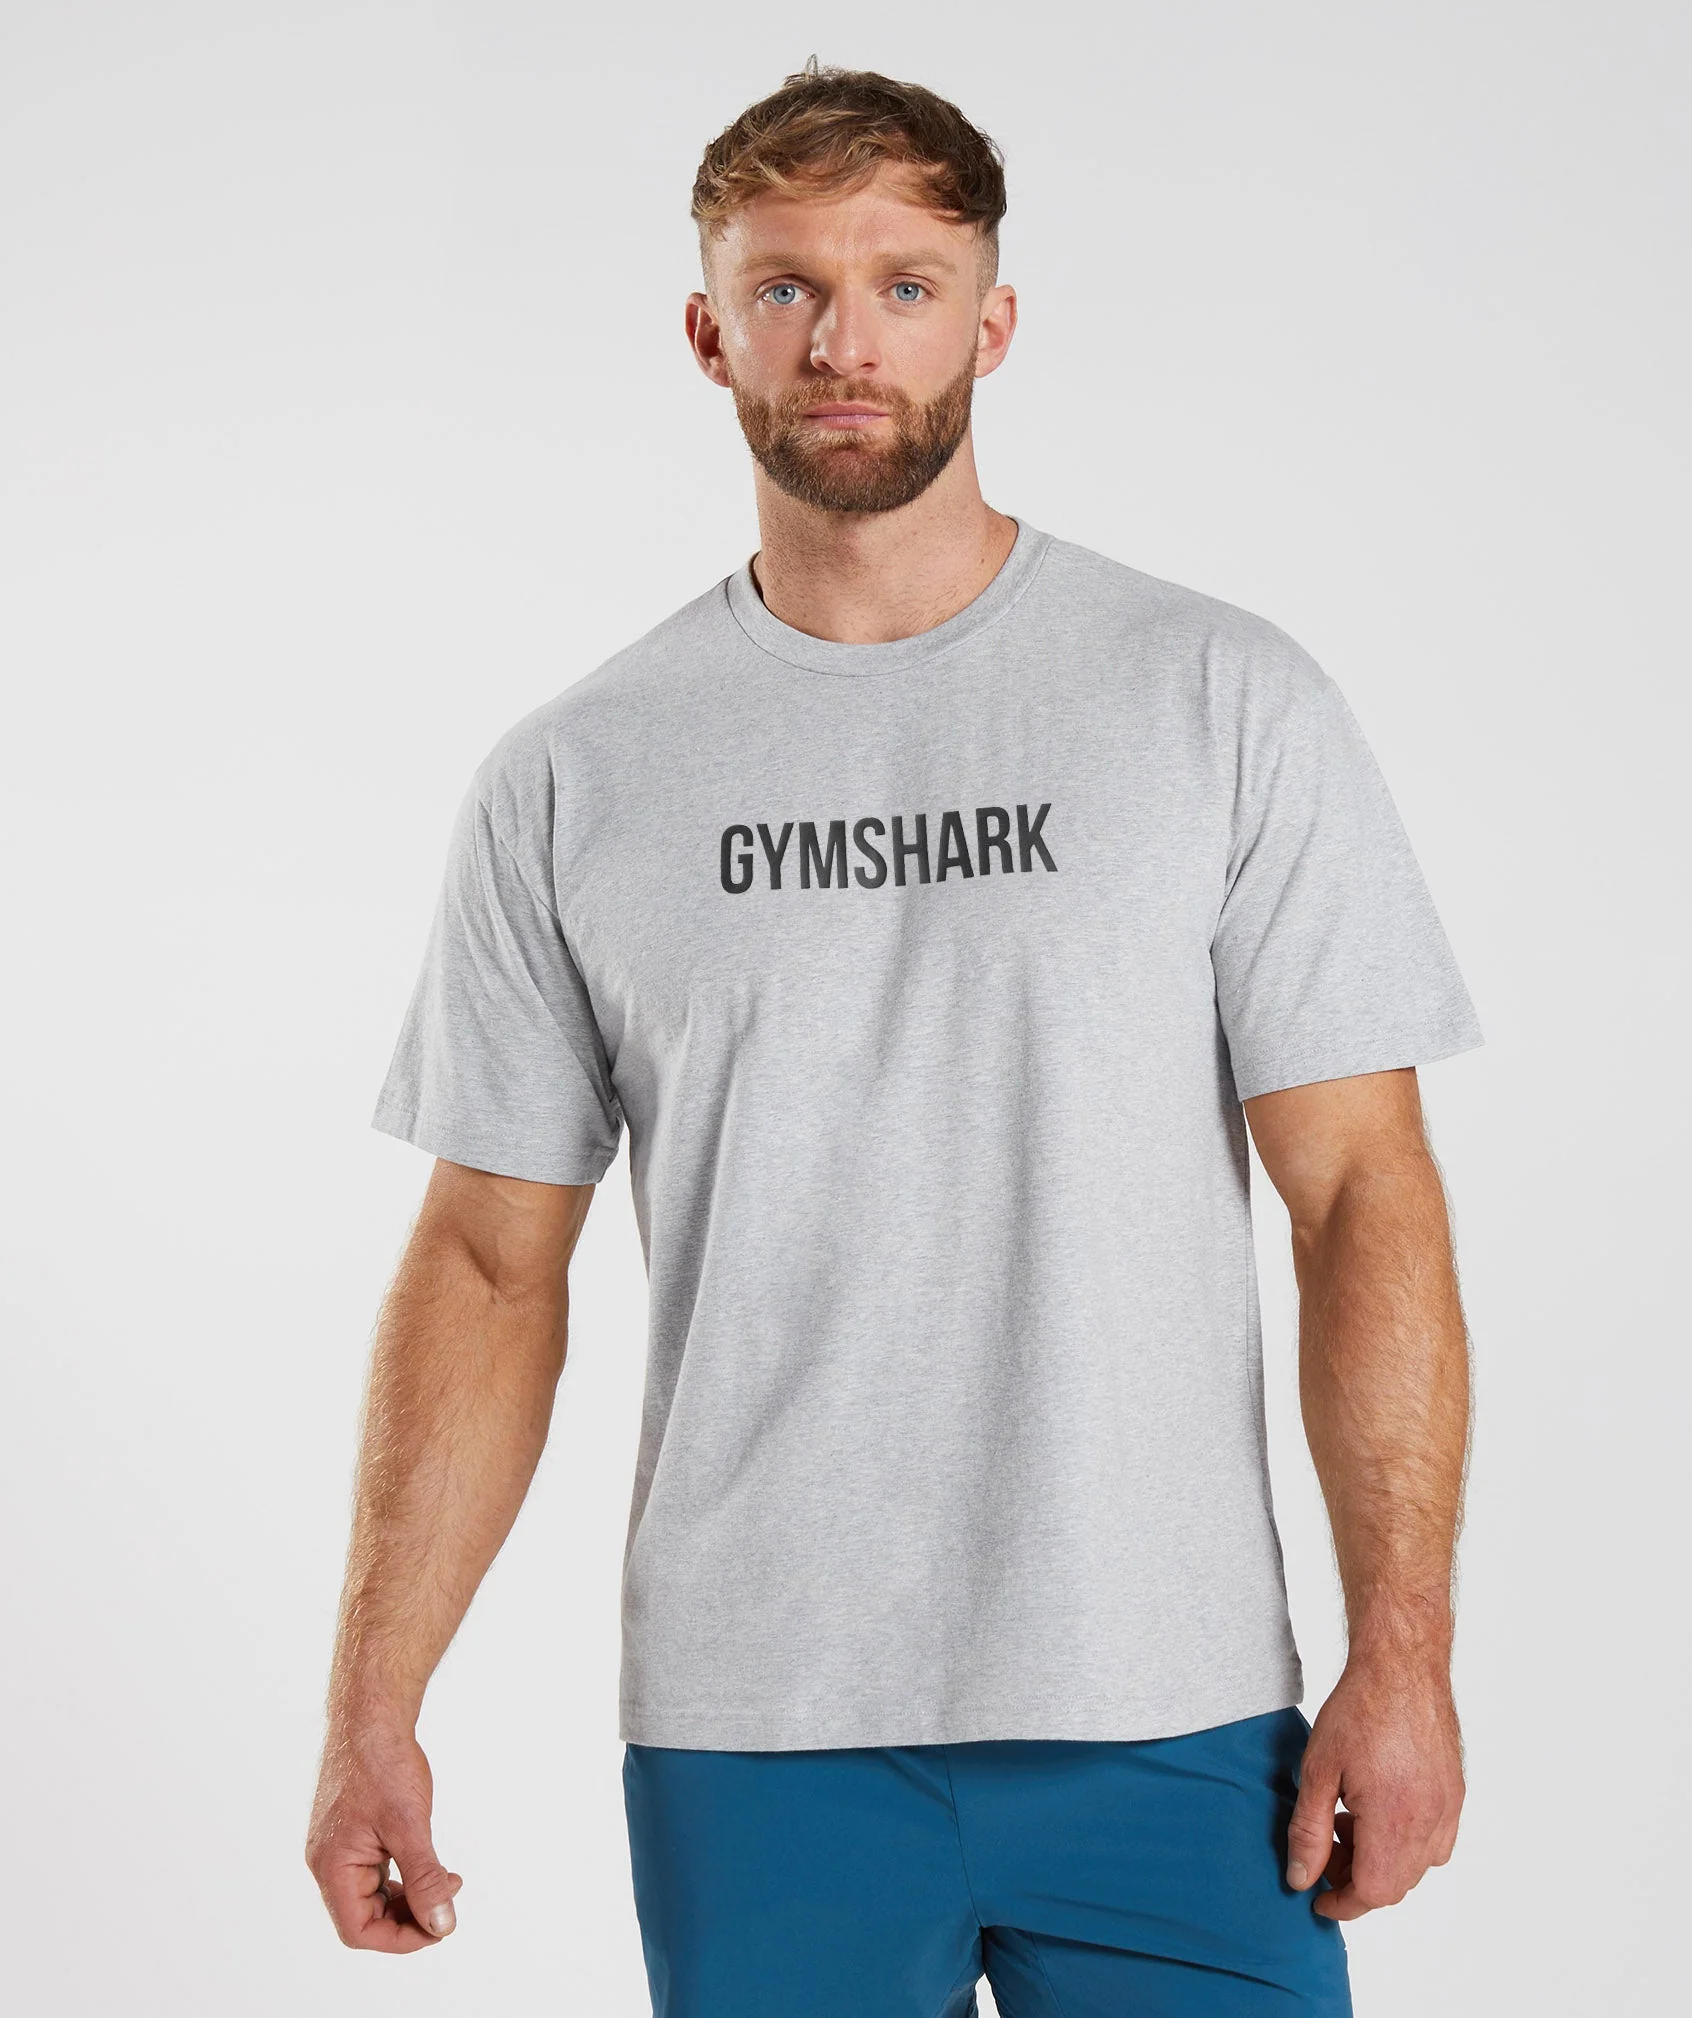 Gymshark verkauft dieses T-Shirt in verschiedenen Farben für 7,50 £